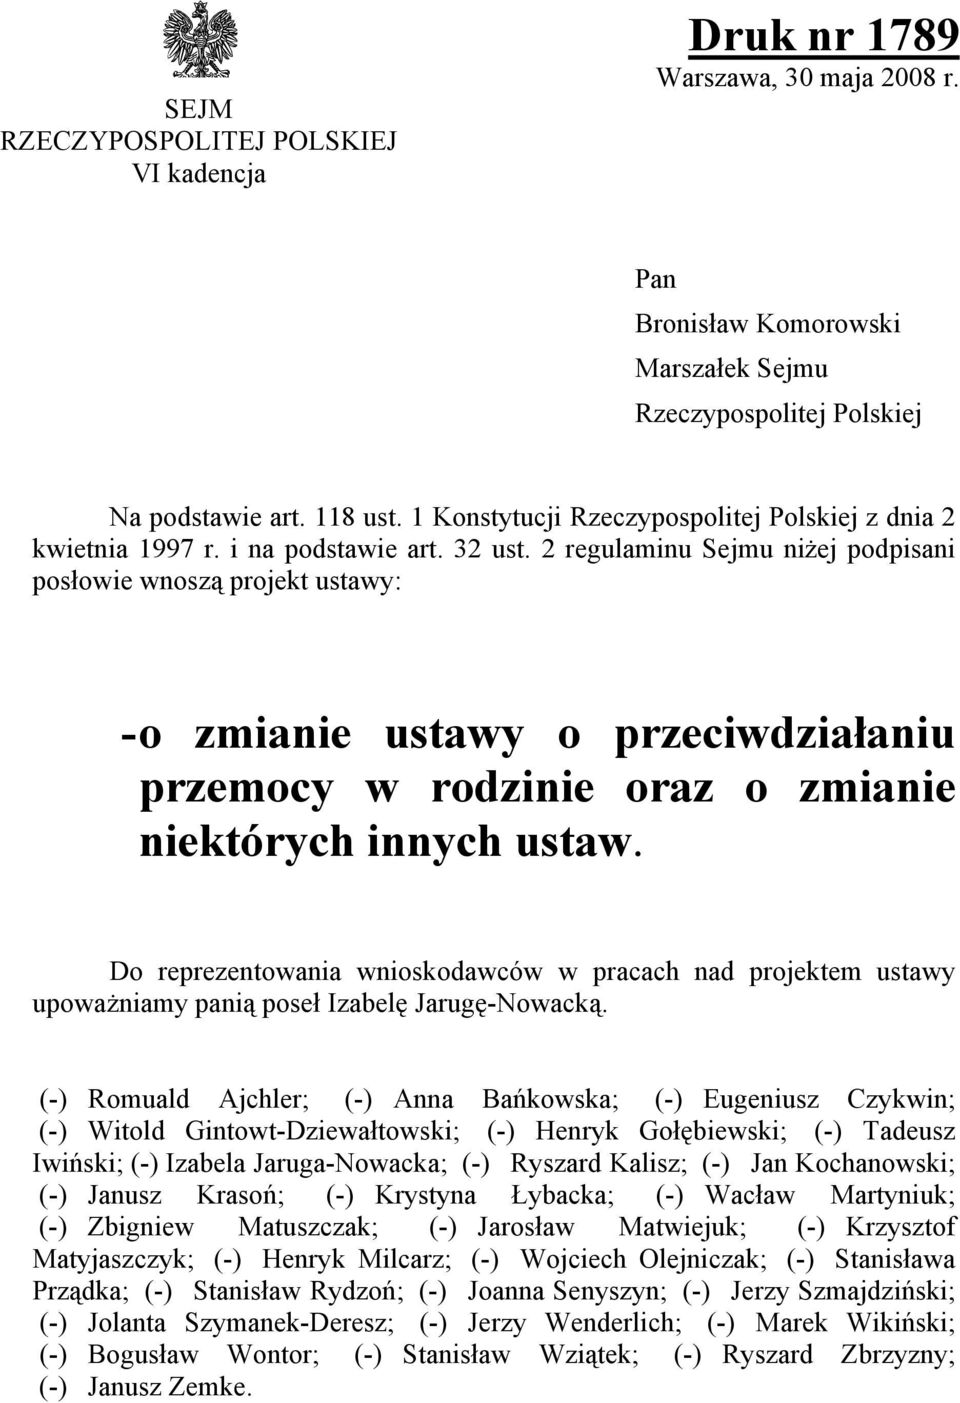 2 regulaminu Sejmu niżej podpisani posowie wnosz projekt ustawy: - o zmianie ustawy o przeciwdziaaniu przemocy w rodzinie oraz o zmianie niektrych innych ustaw.